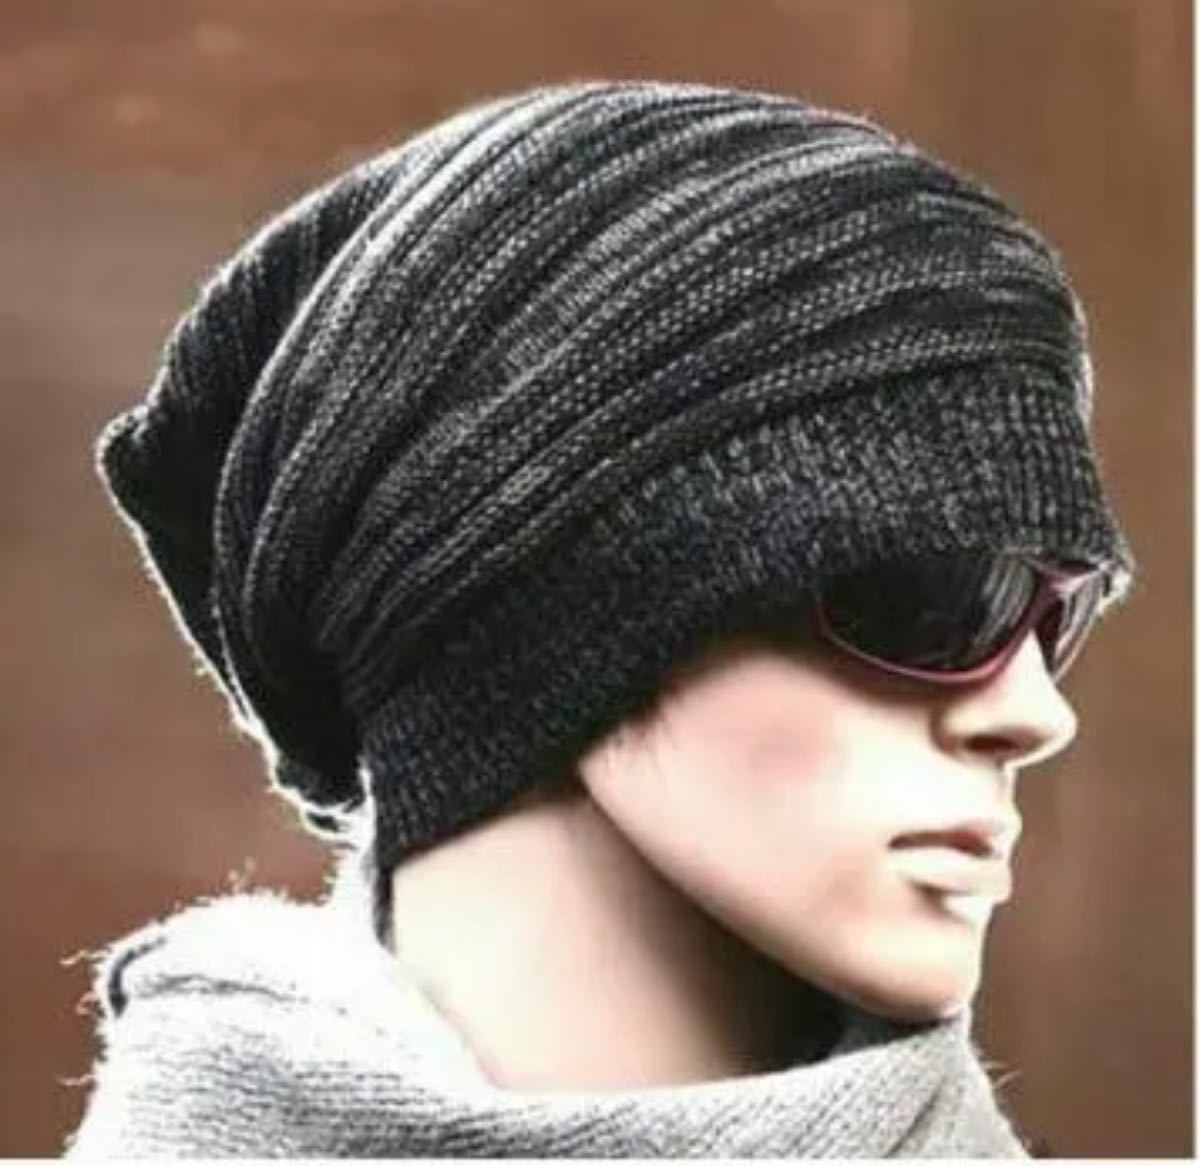 ブラック ニット帽 ユニセックス ネックウォーマー スノボ スキー ウェア 帽子 帽子キャップ 男女兼用 スノボ ユニセックス